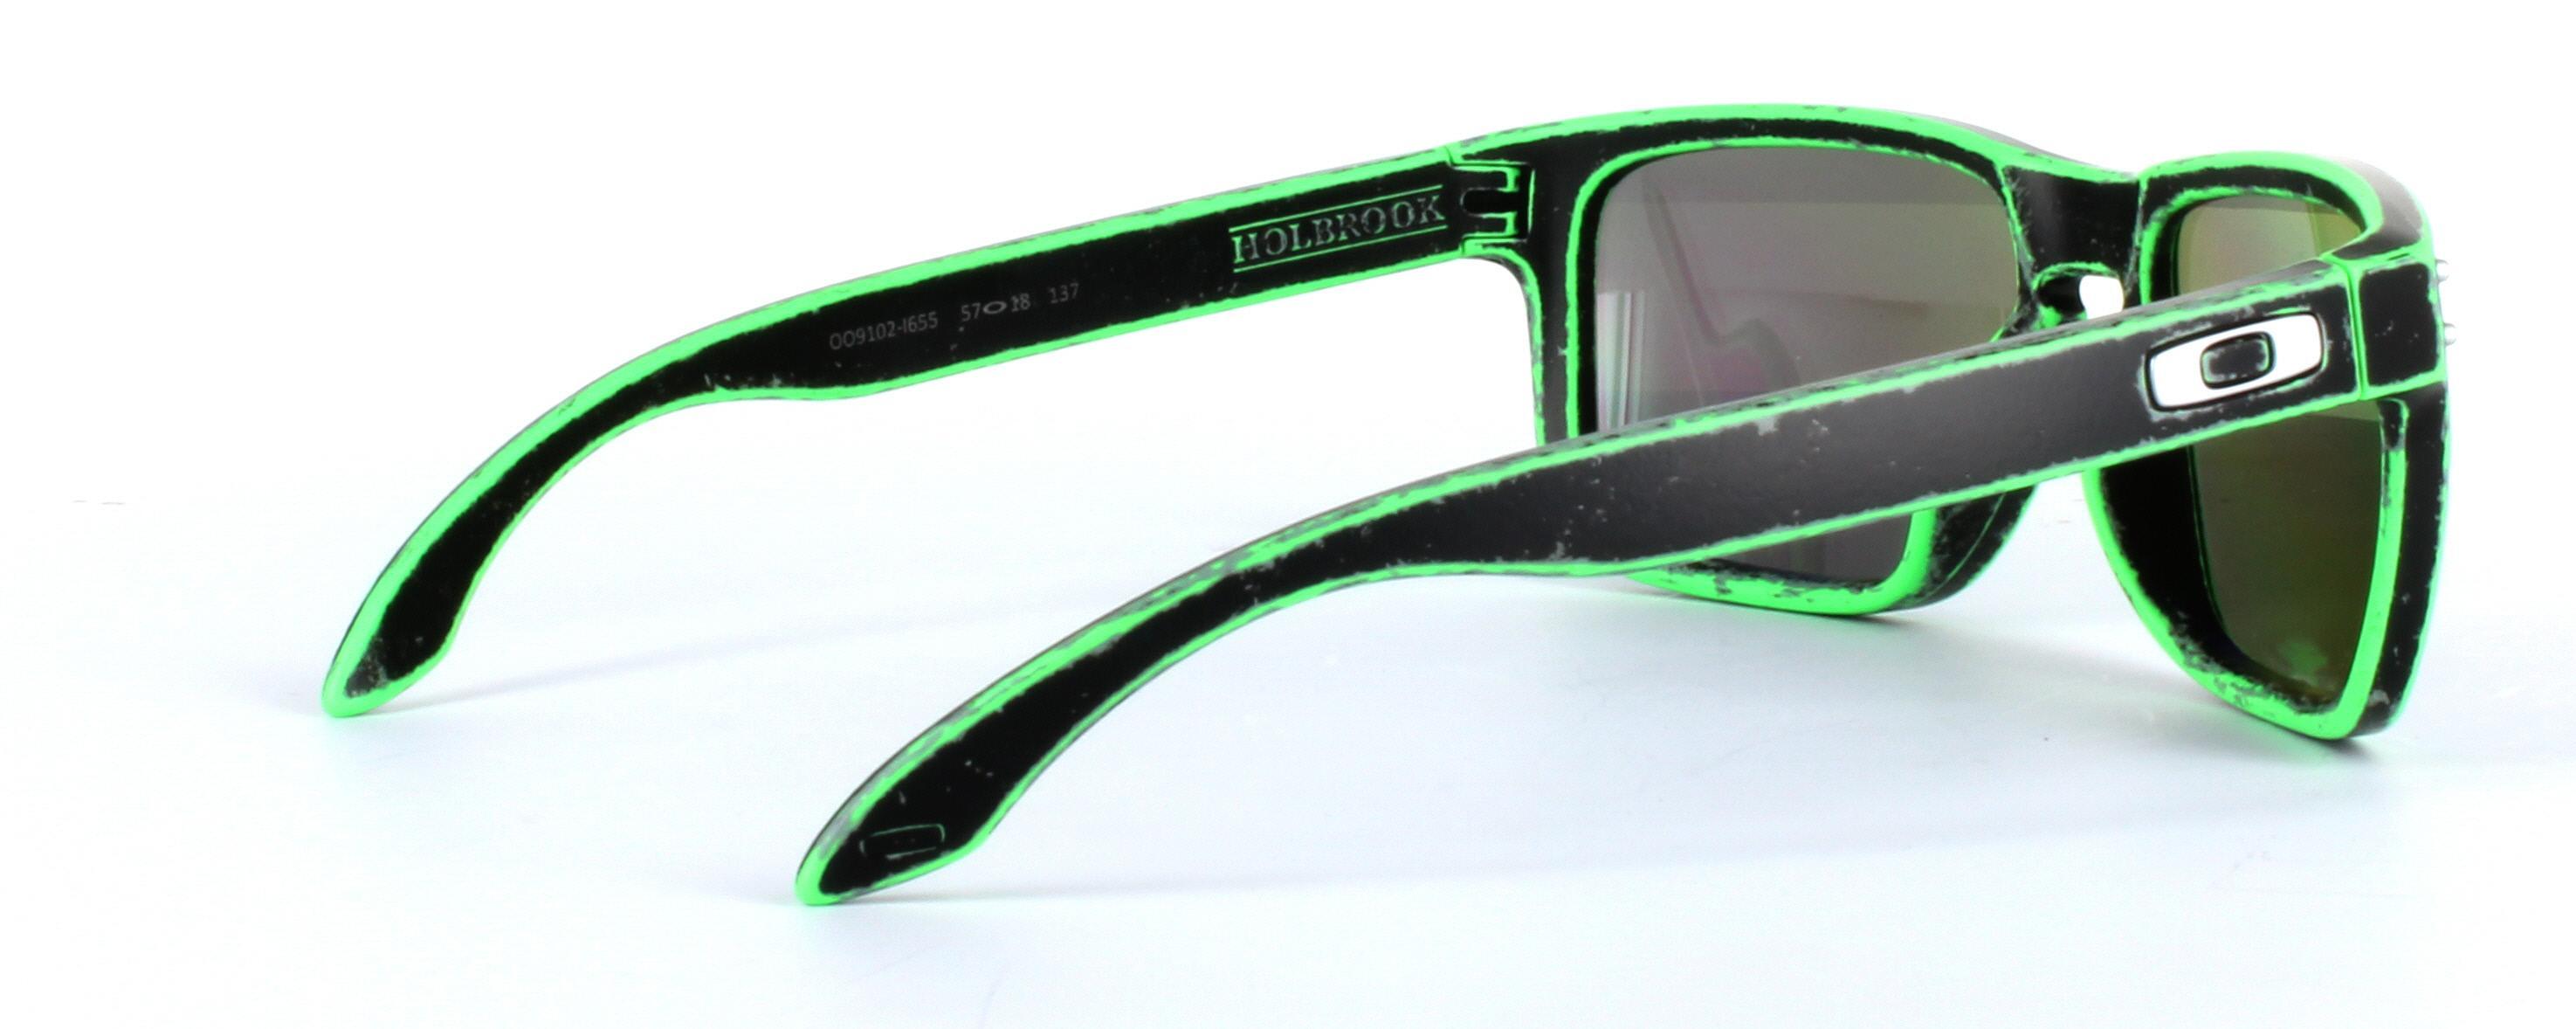 Oakley (9102) Black Full Rim Plastic Prescription Sunglasses - Image View 4